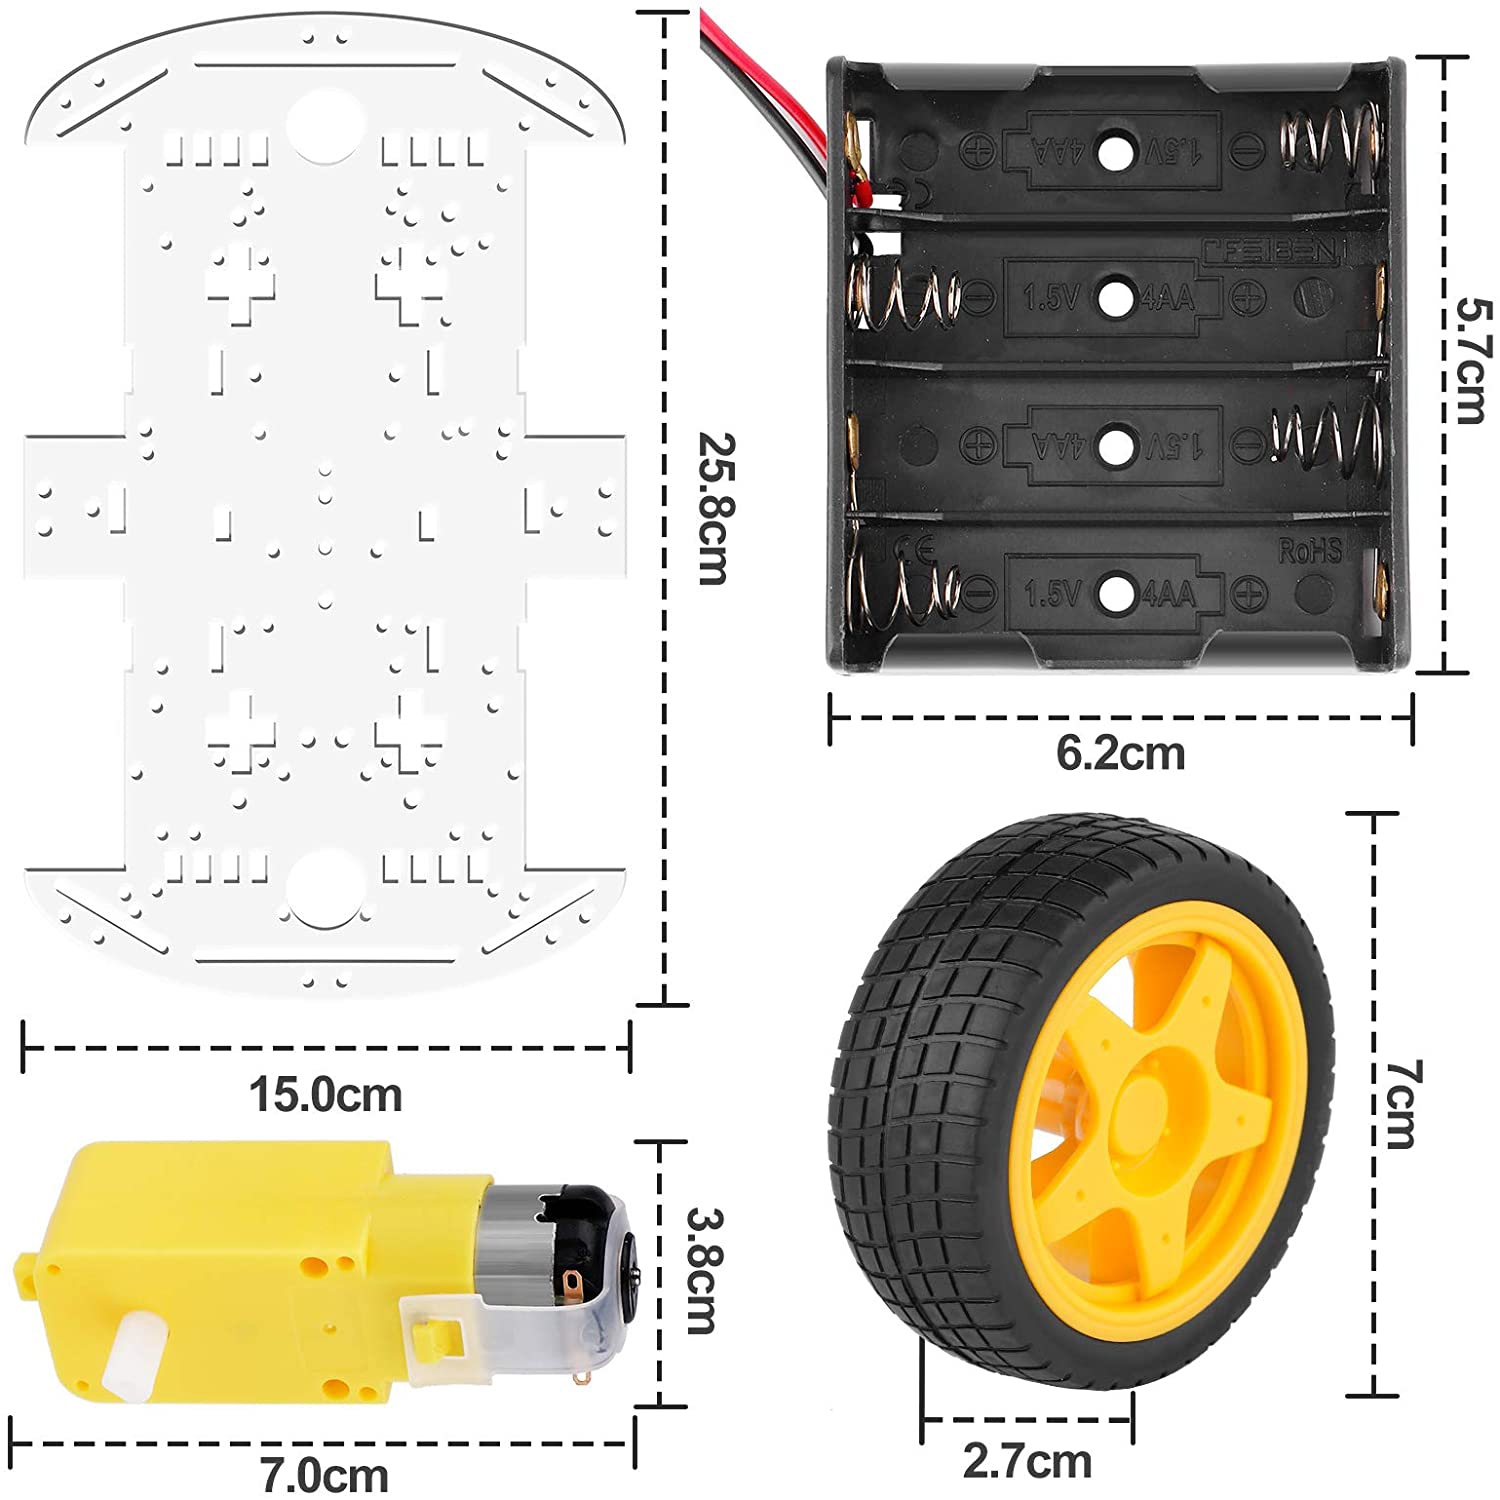 DIY Robotik Auto Smart Chassis Kit mit Speed Encoder 4W 2-Layer für Arduino, RPi - Zum Vergrößern klicken